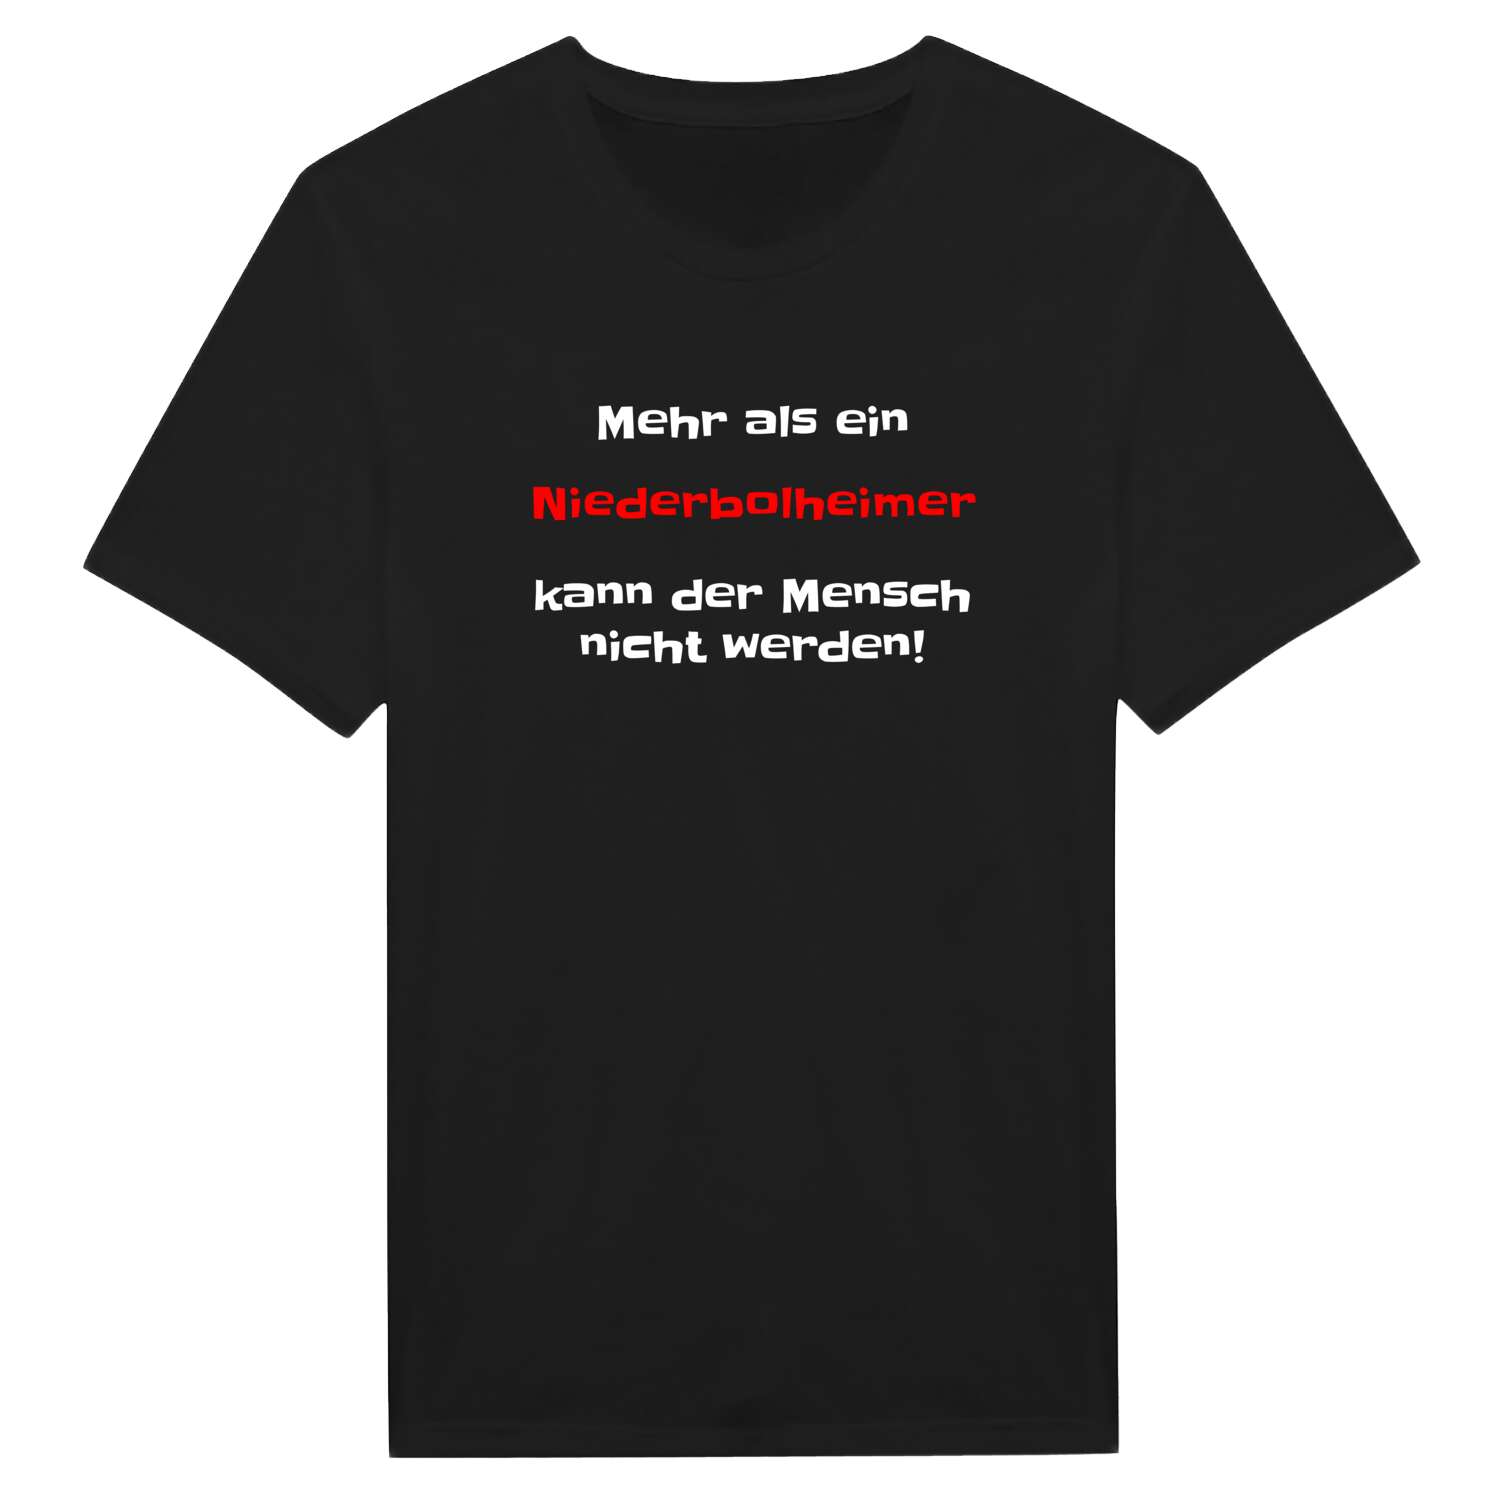 Niederbolheim T-Shirt »Mehr als ein«